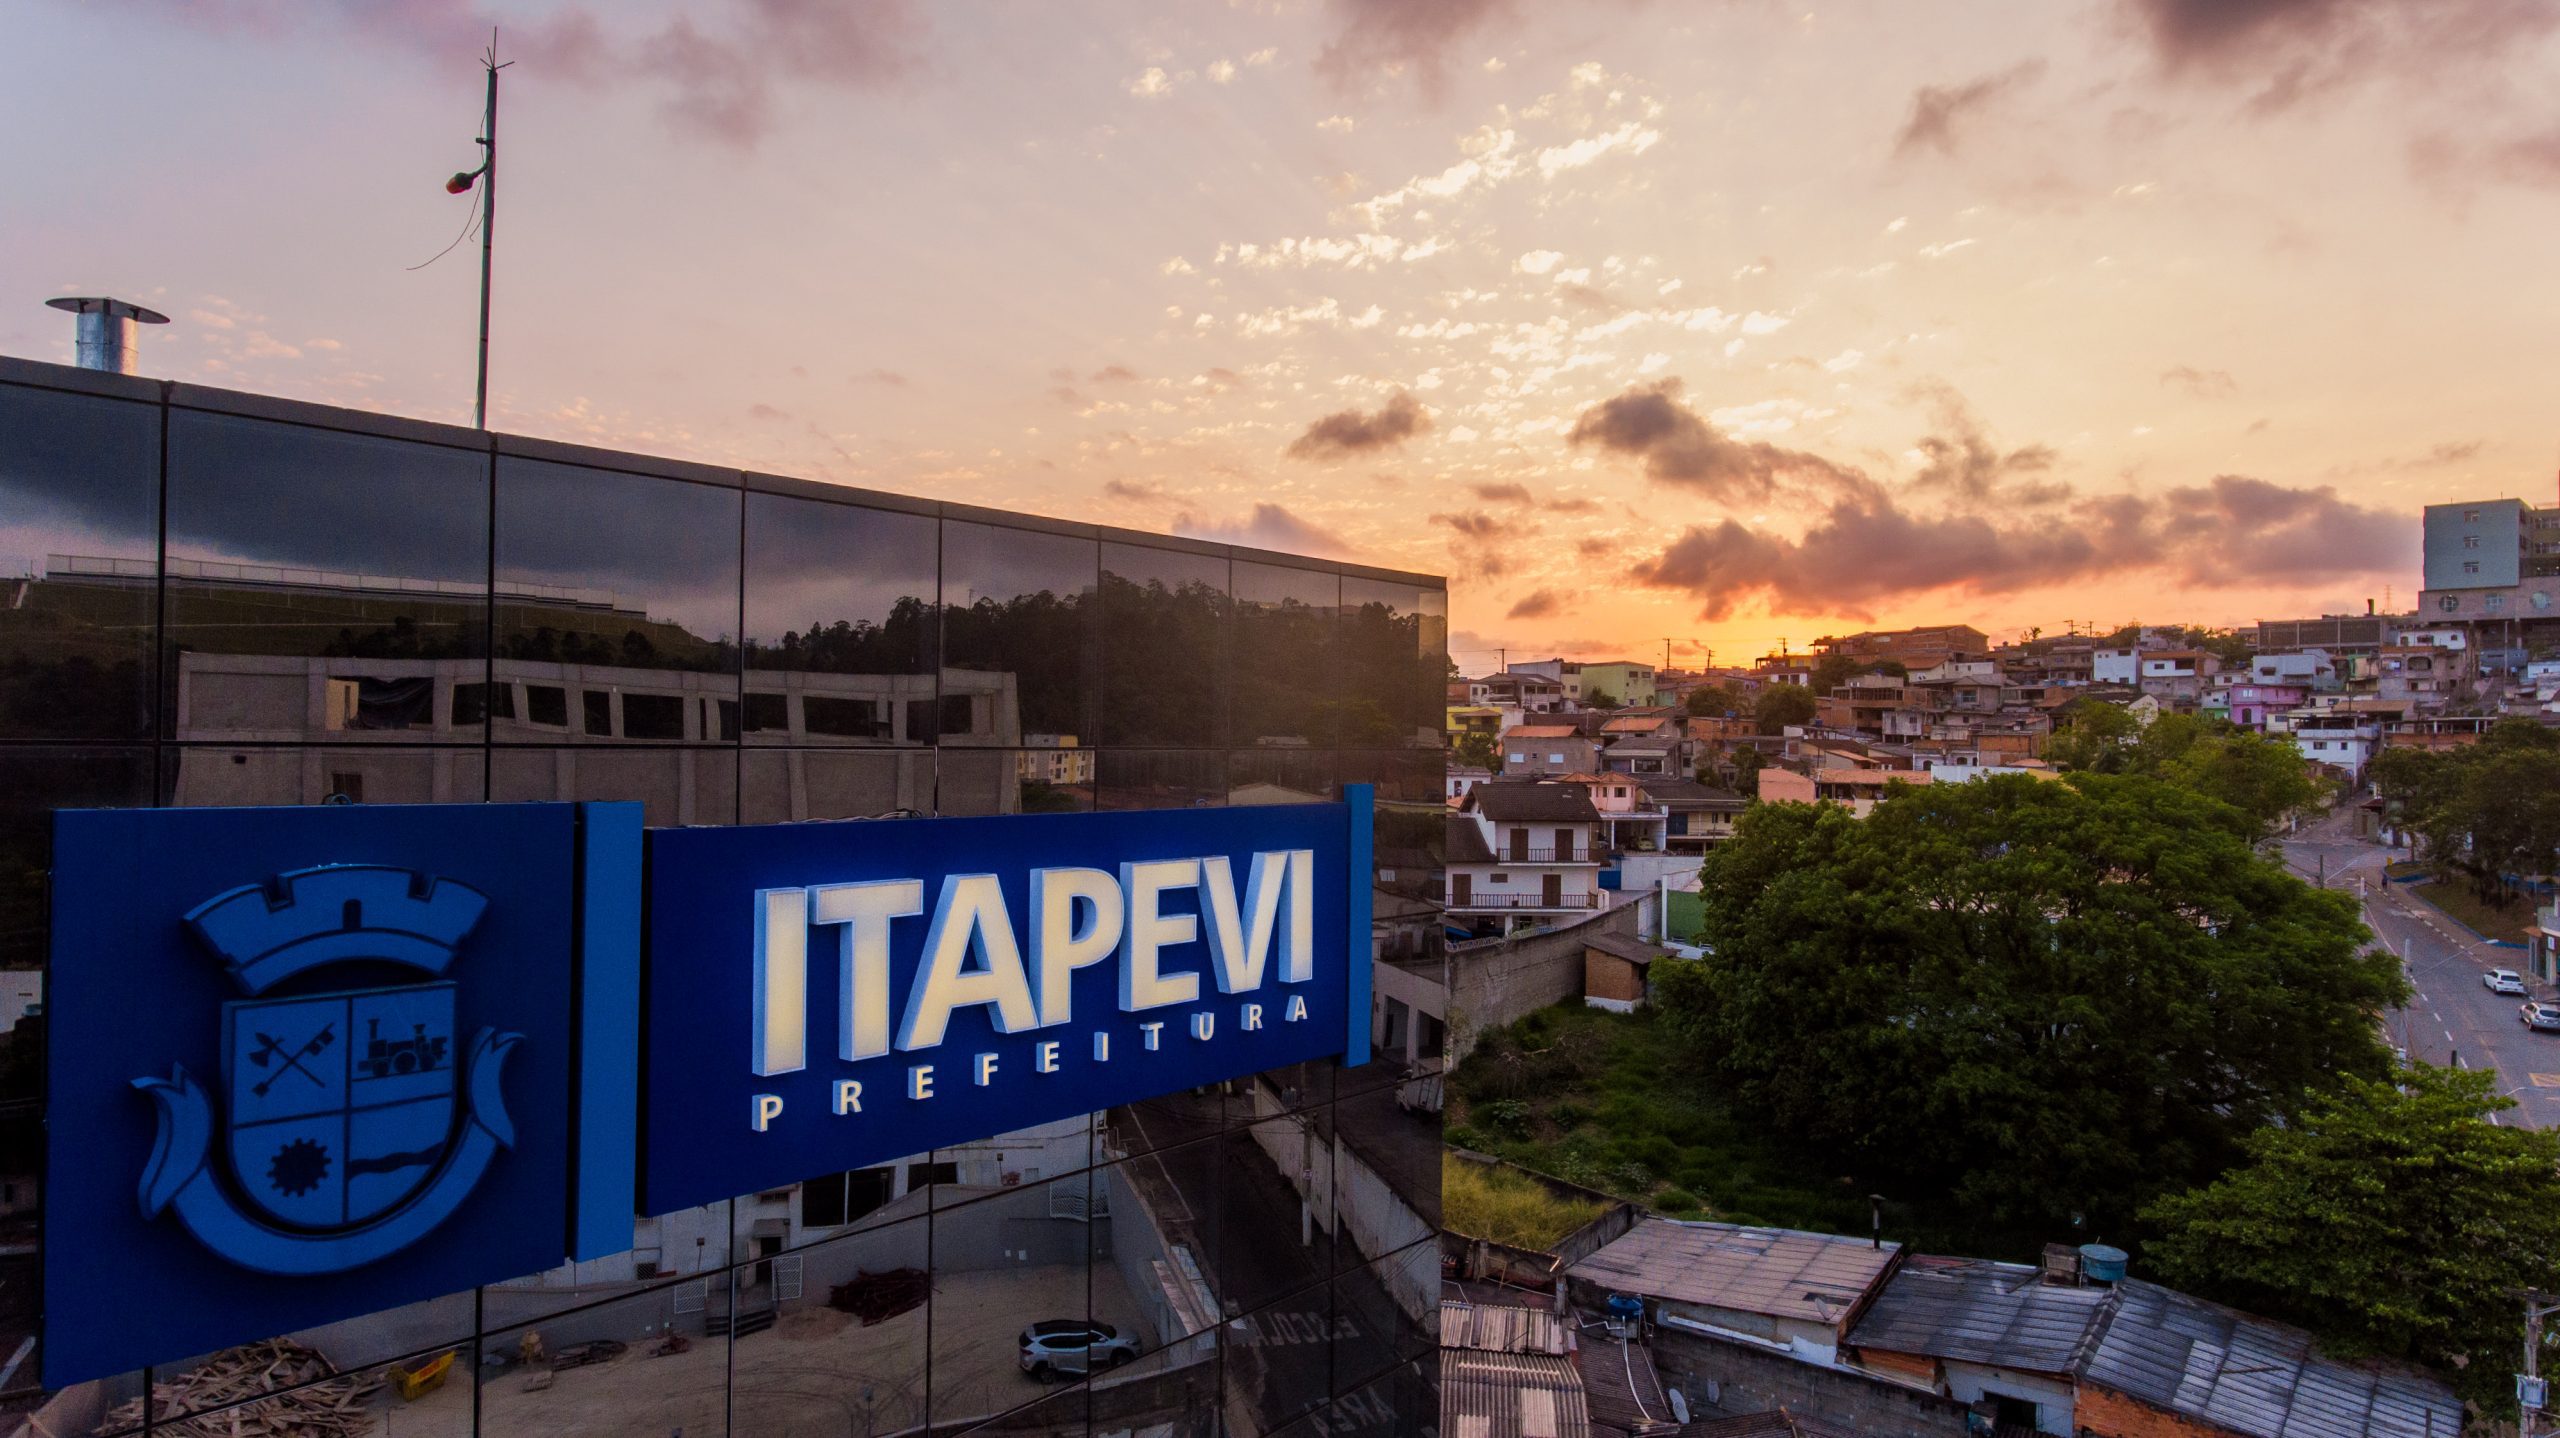 Prefeitura de Itapevi lança REFIS, programa de parcelamento de